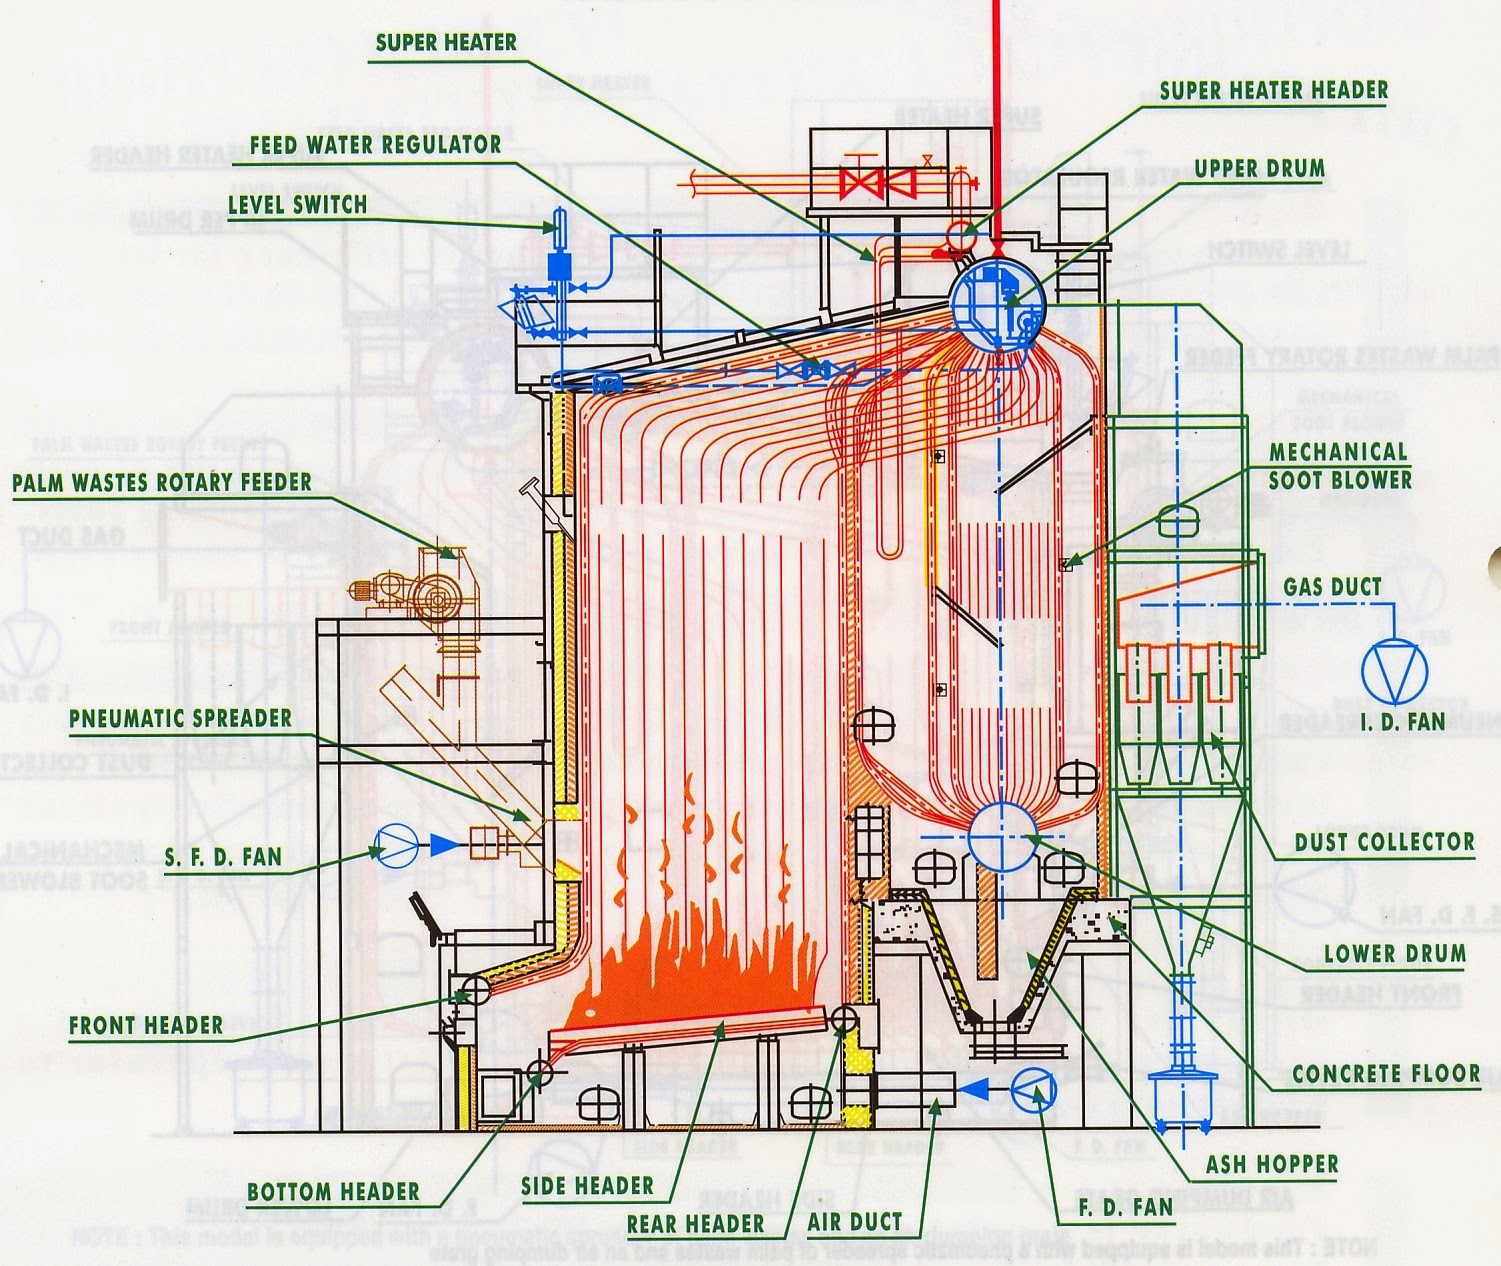 Engineering's Heart: WATER TUBE BOILER